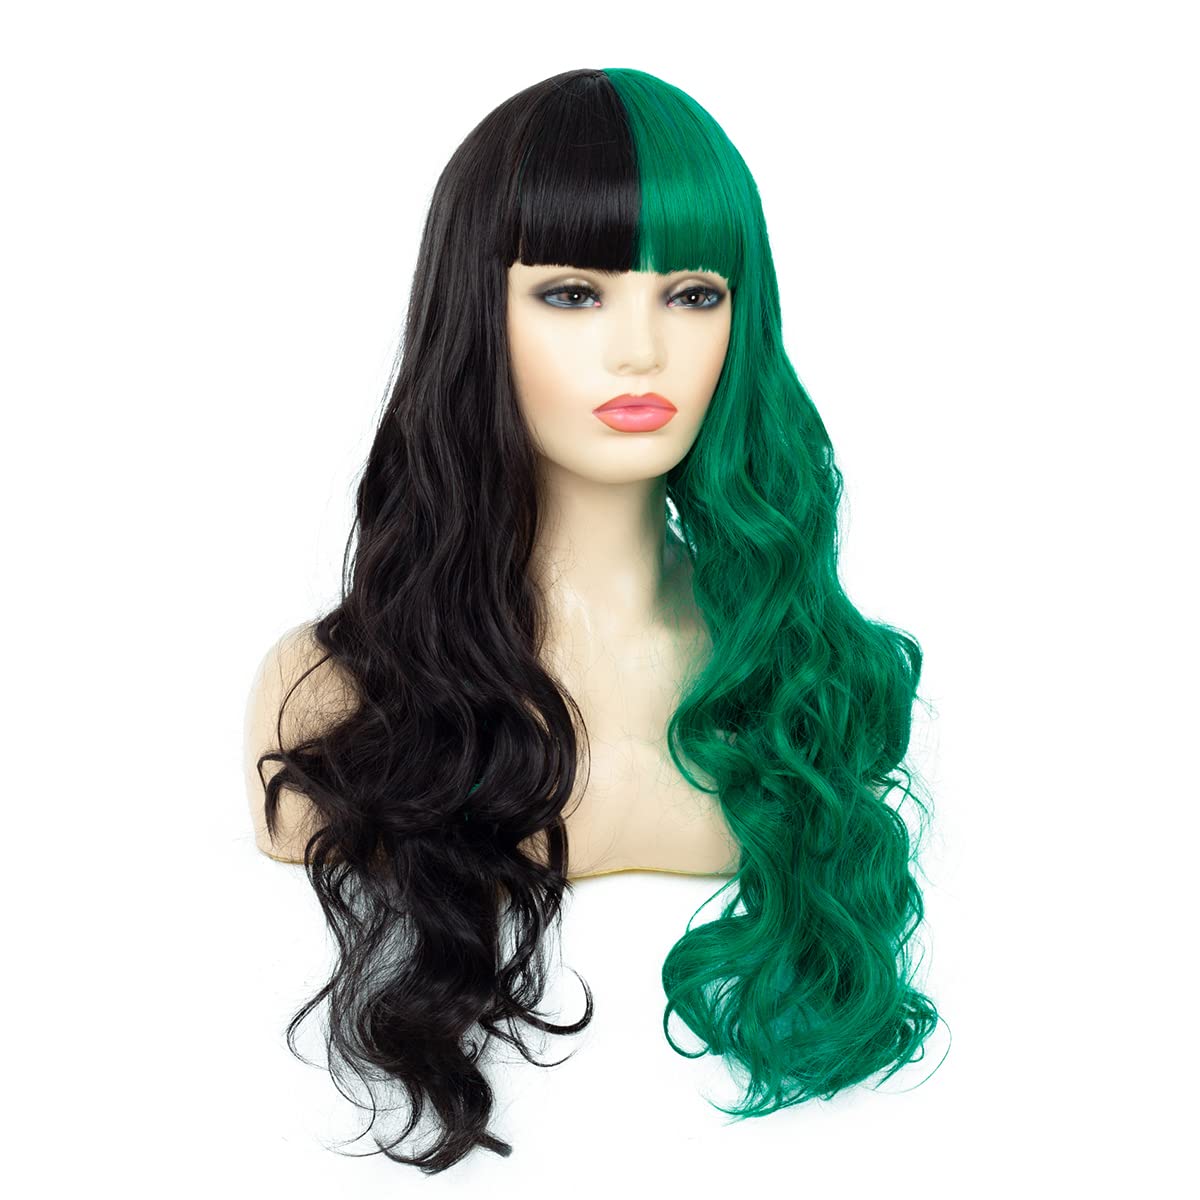 Half Black Half Green Split Dye Hair Wig With Bangs